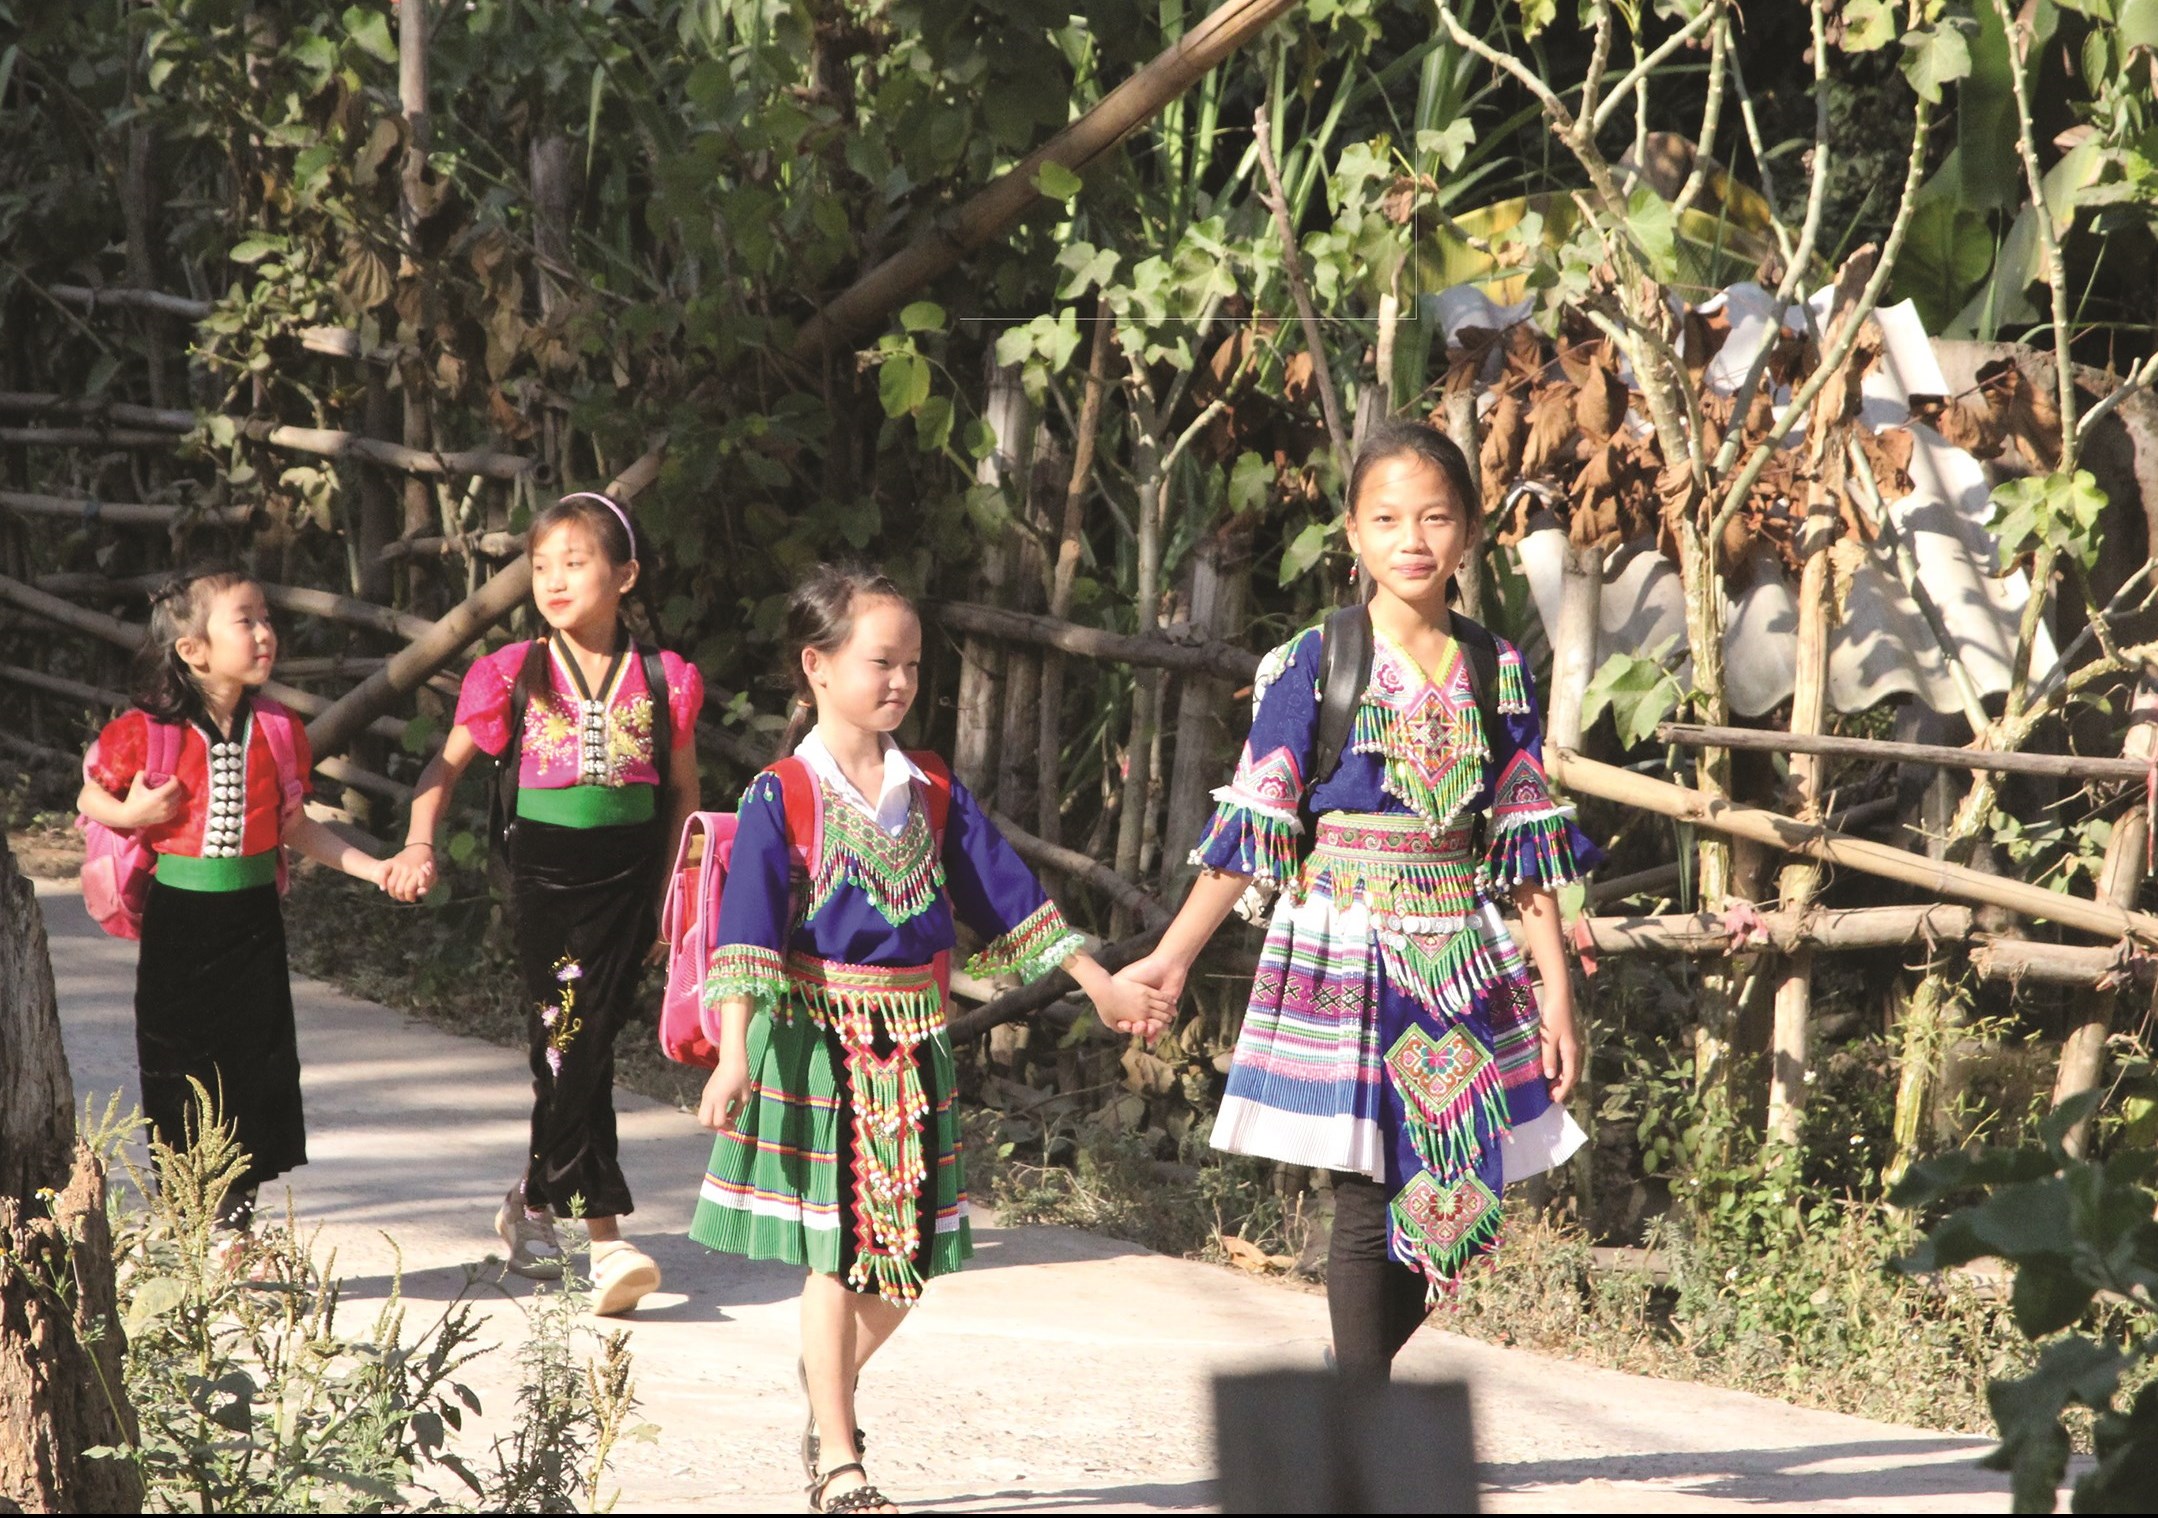 Em Sùng Thị Dín (đi đầu bên phải) trên đường đến trường. Ảnh chụp tháng 12/2019